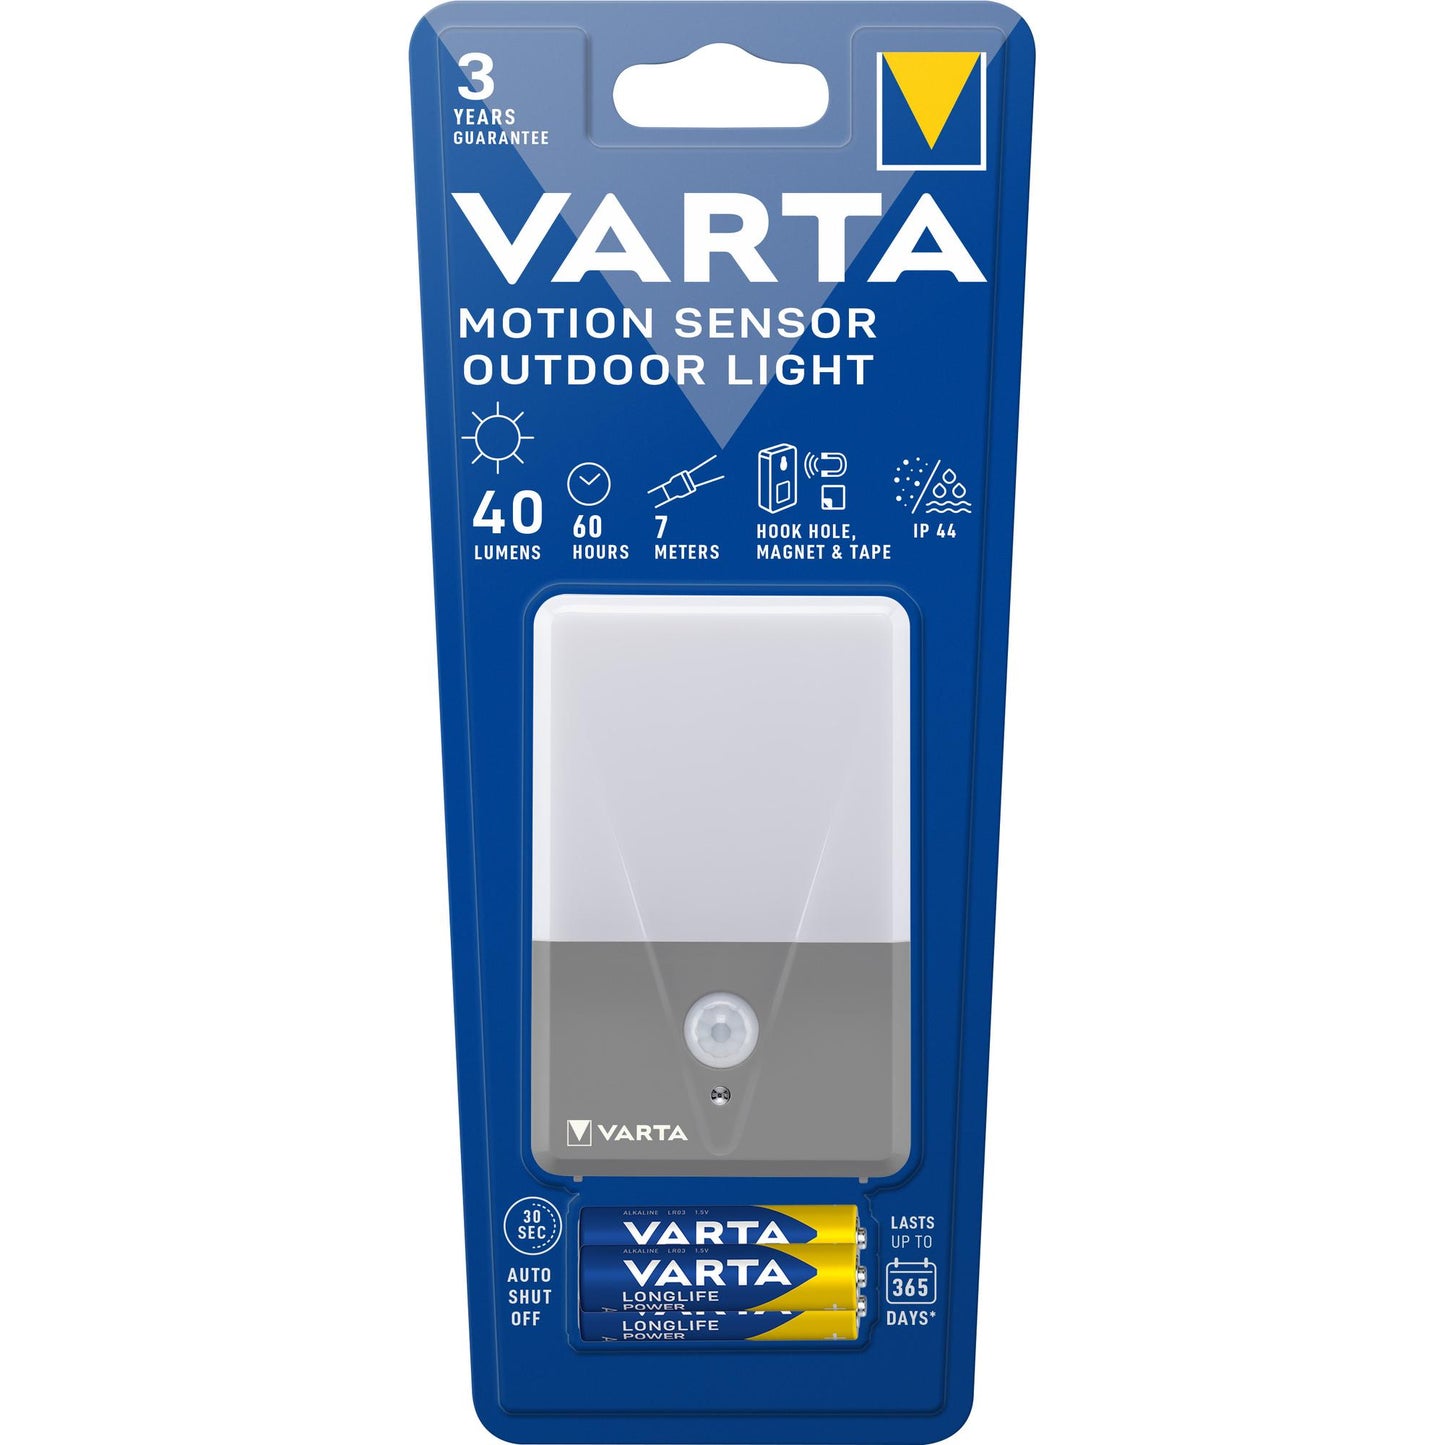 VARTA LED Taschenlampe Motion Sensor Outdoor Light, 40lm, inkl. 3x AAA Alkaline Batterie, Retail Blister